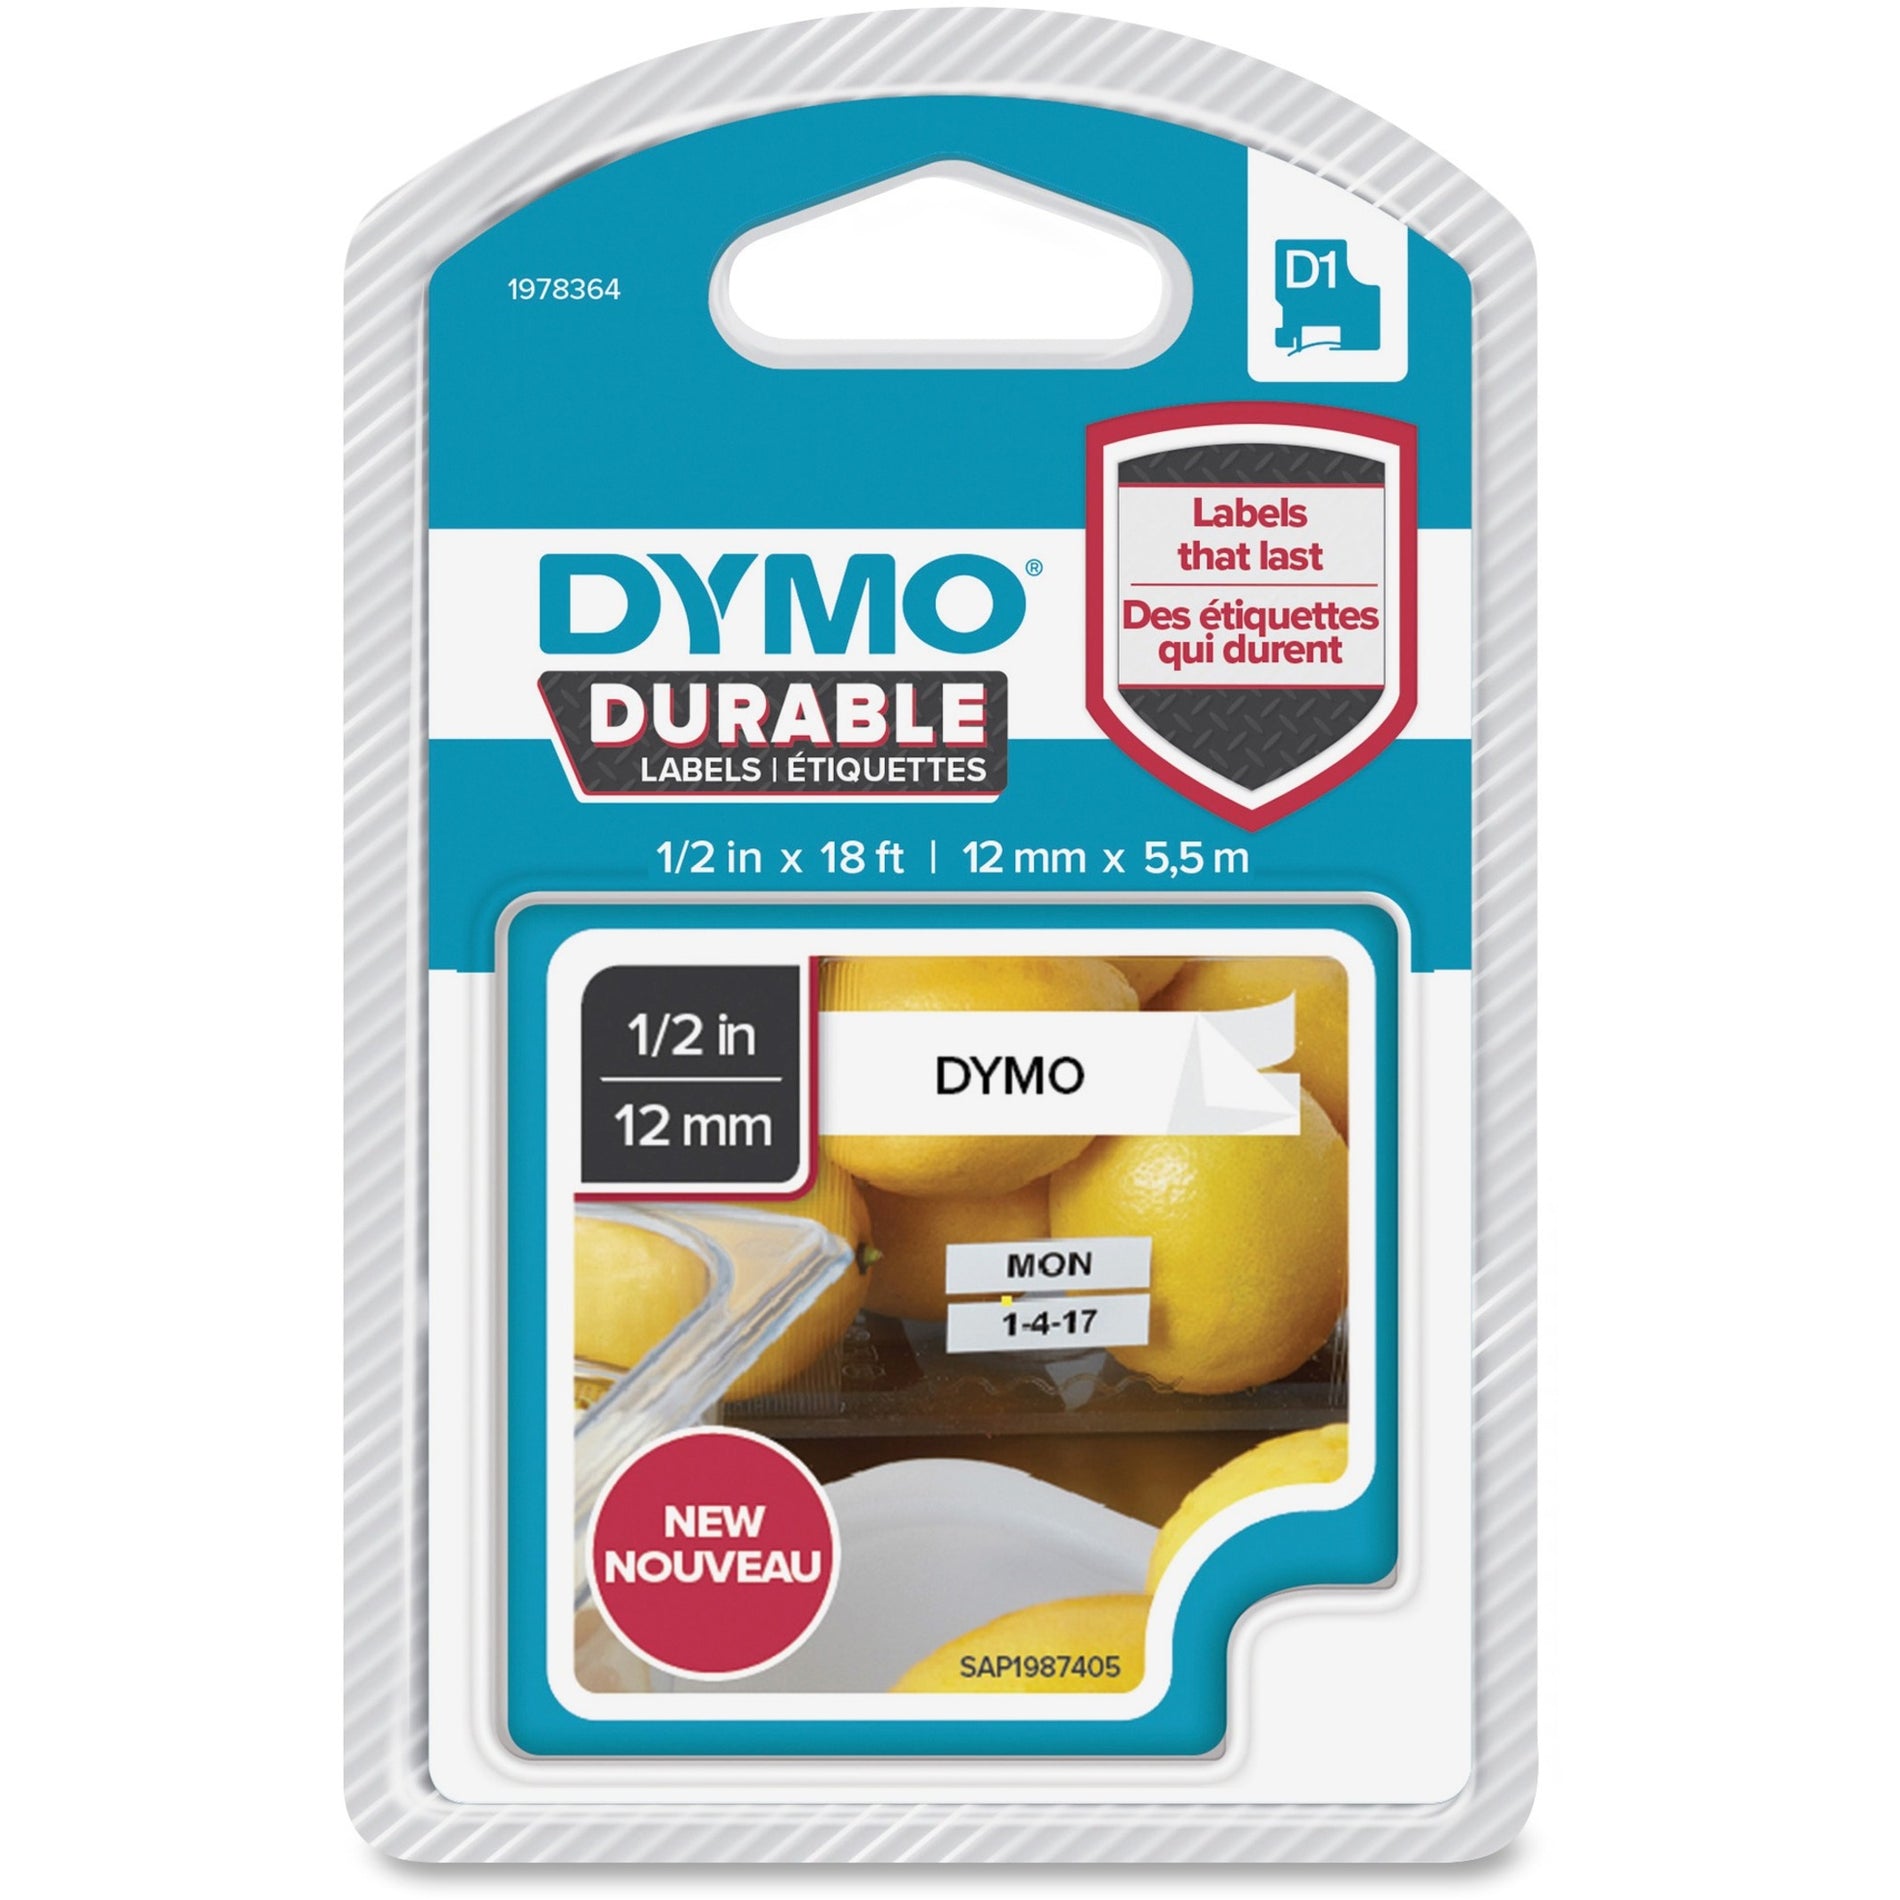 Dymo 1978364 D1 耐用标签，耐候，耐刮擦，不褪色，1/2英寸 白色 迪摩